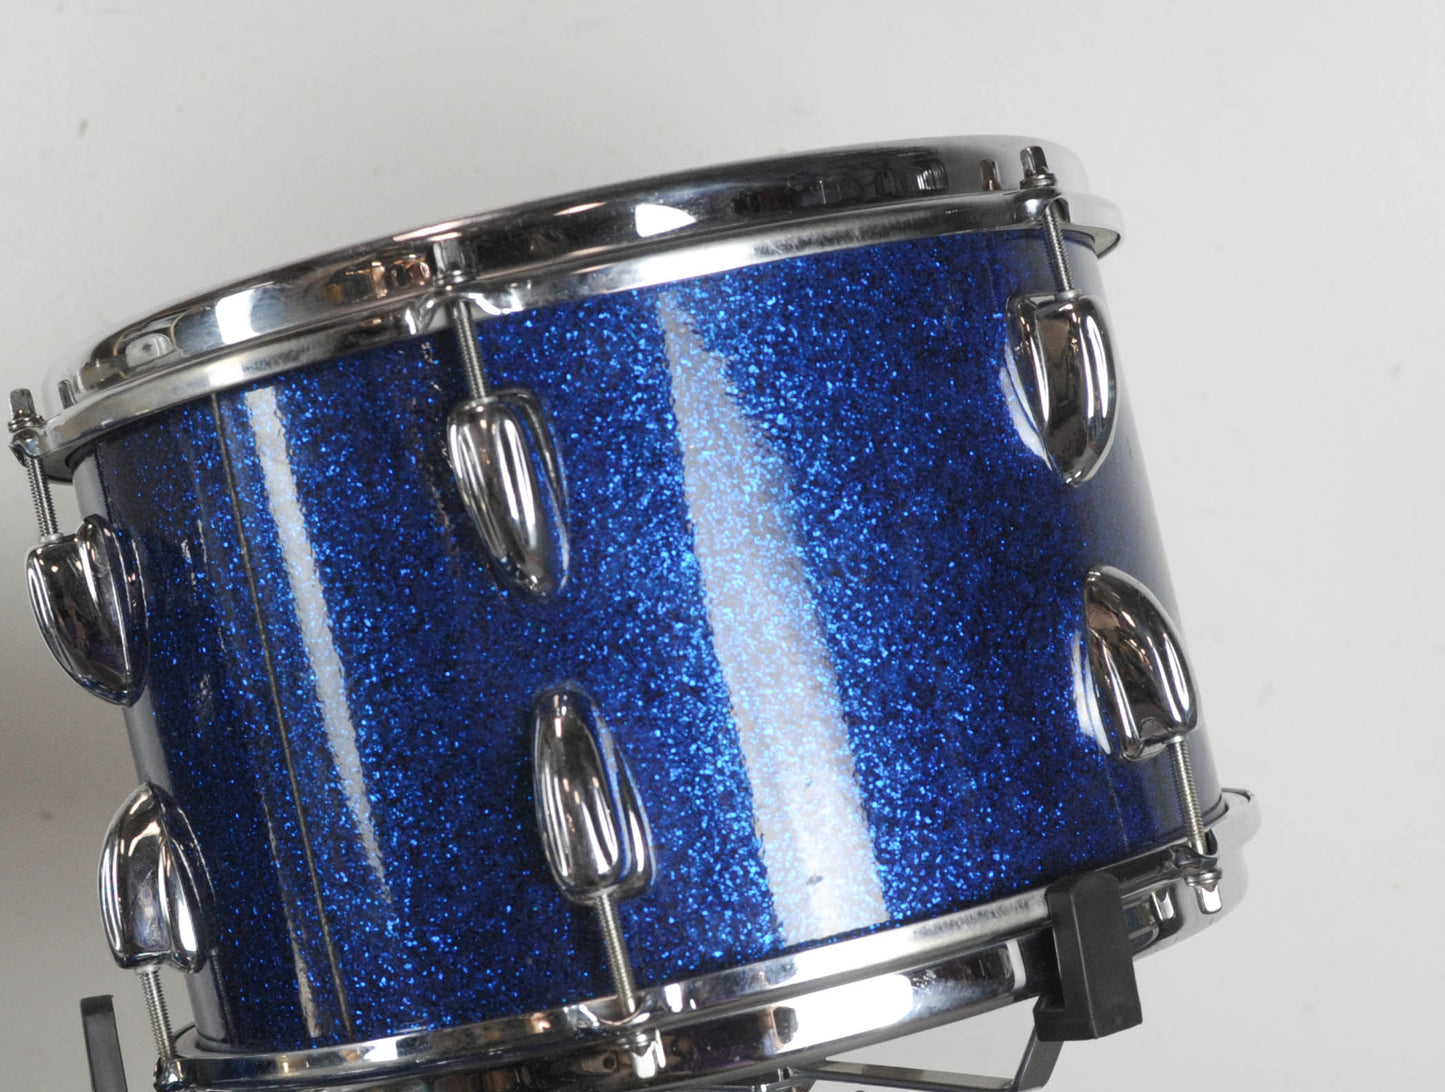 1965 Slingerland "Jet" Sparkling Blue Pearl Drum Set